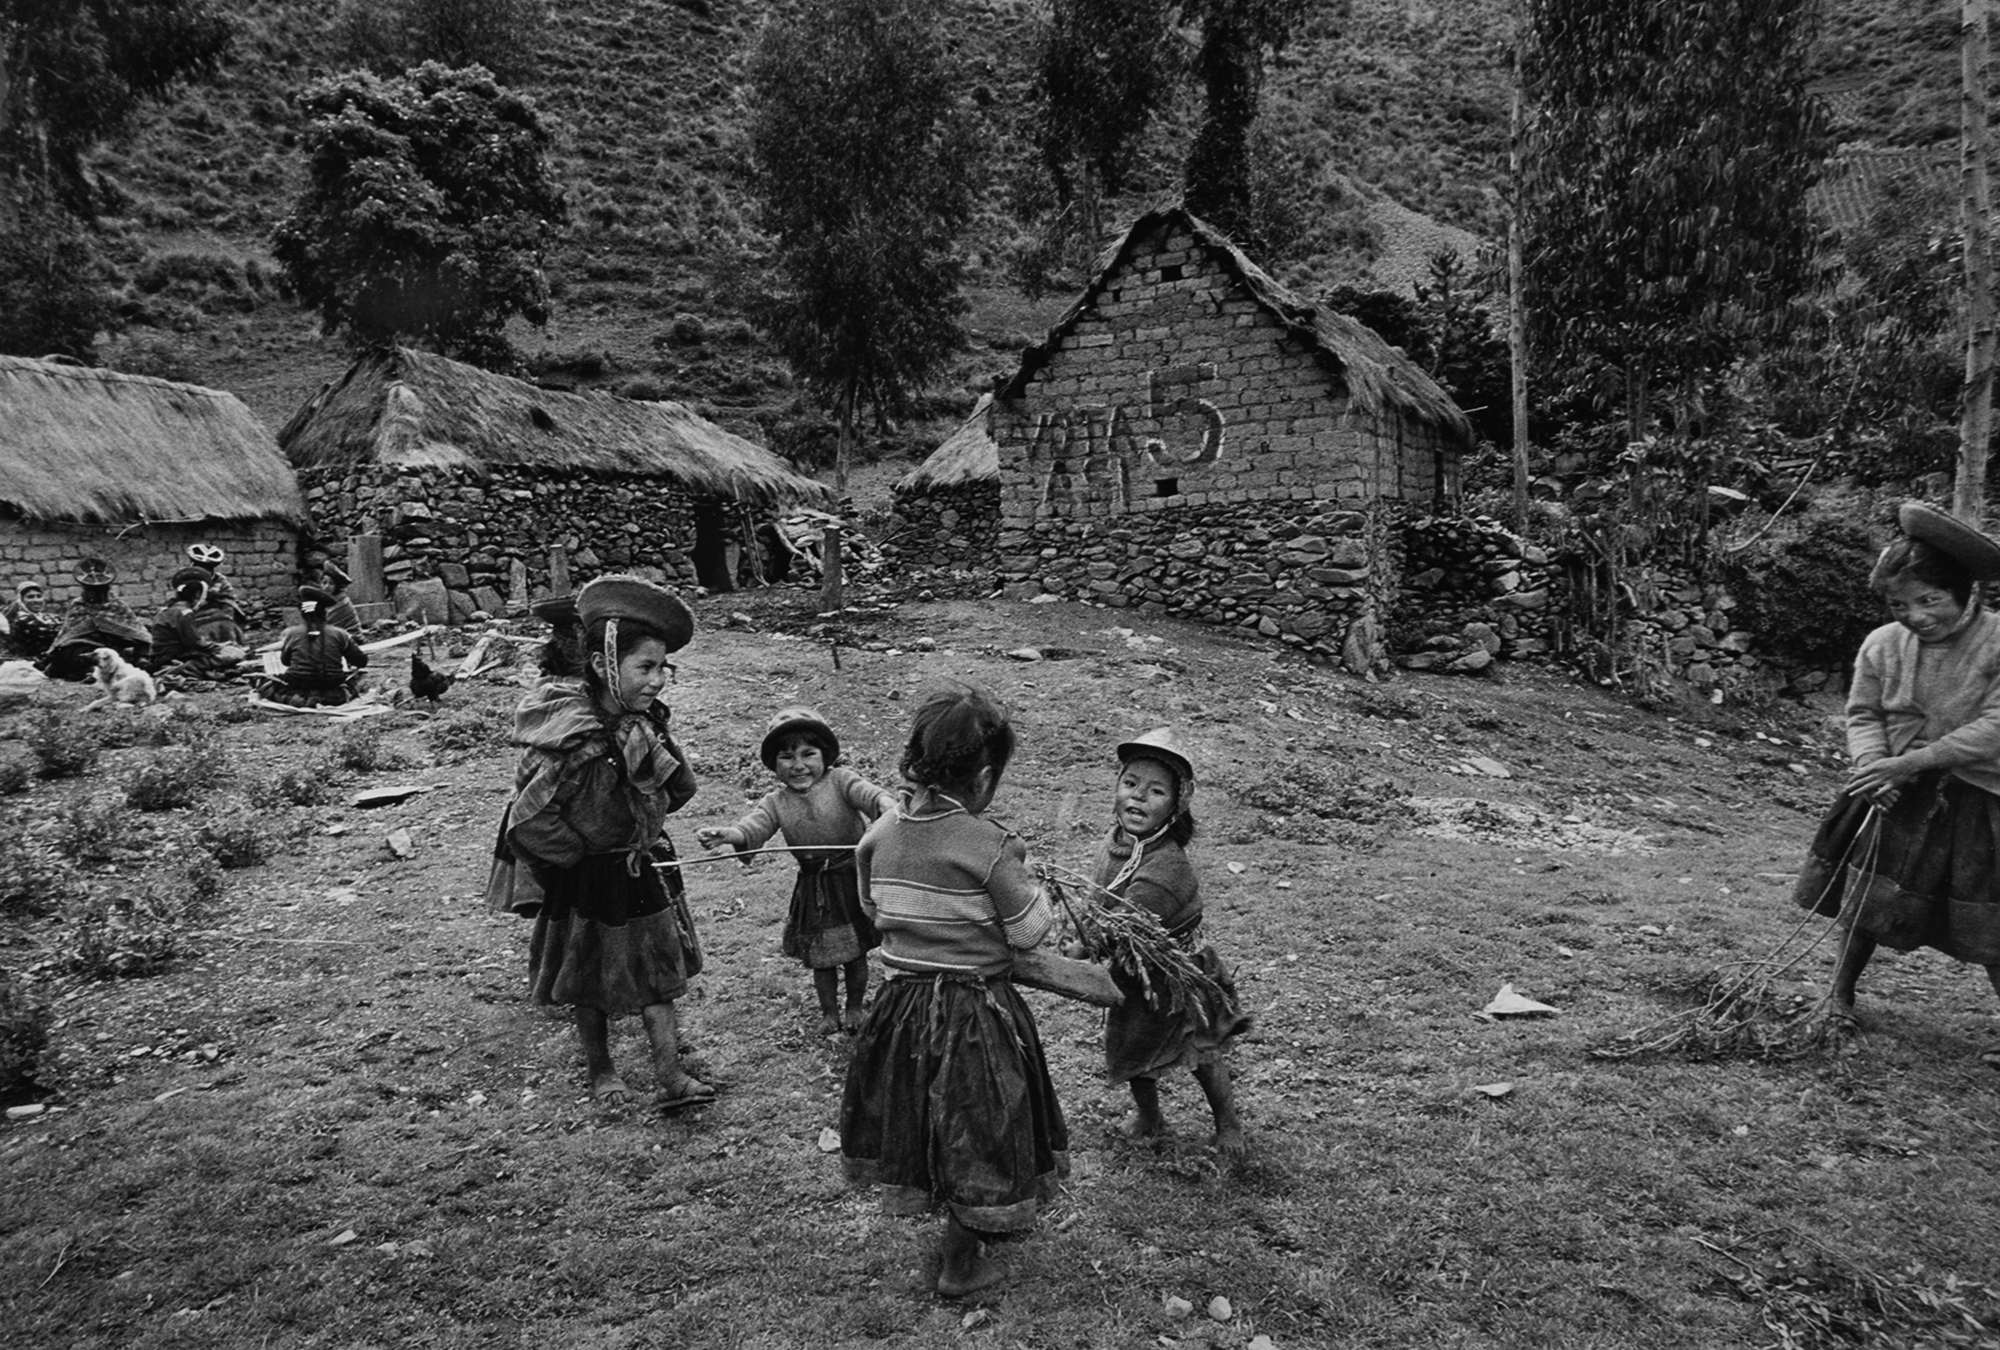 Peruvian Andes - Peasant girls at play